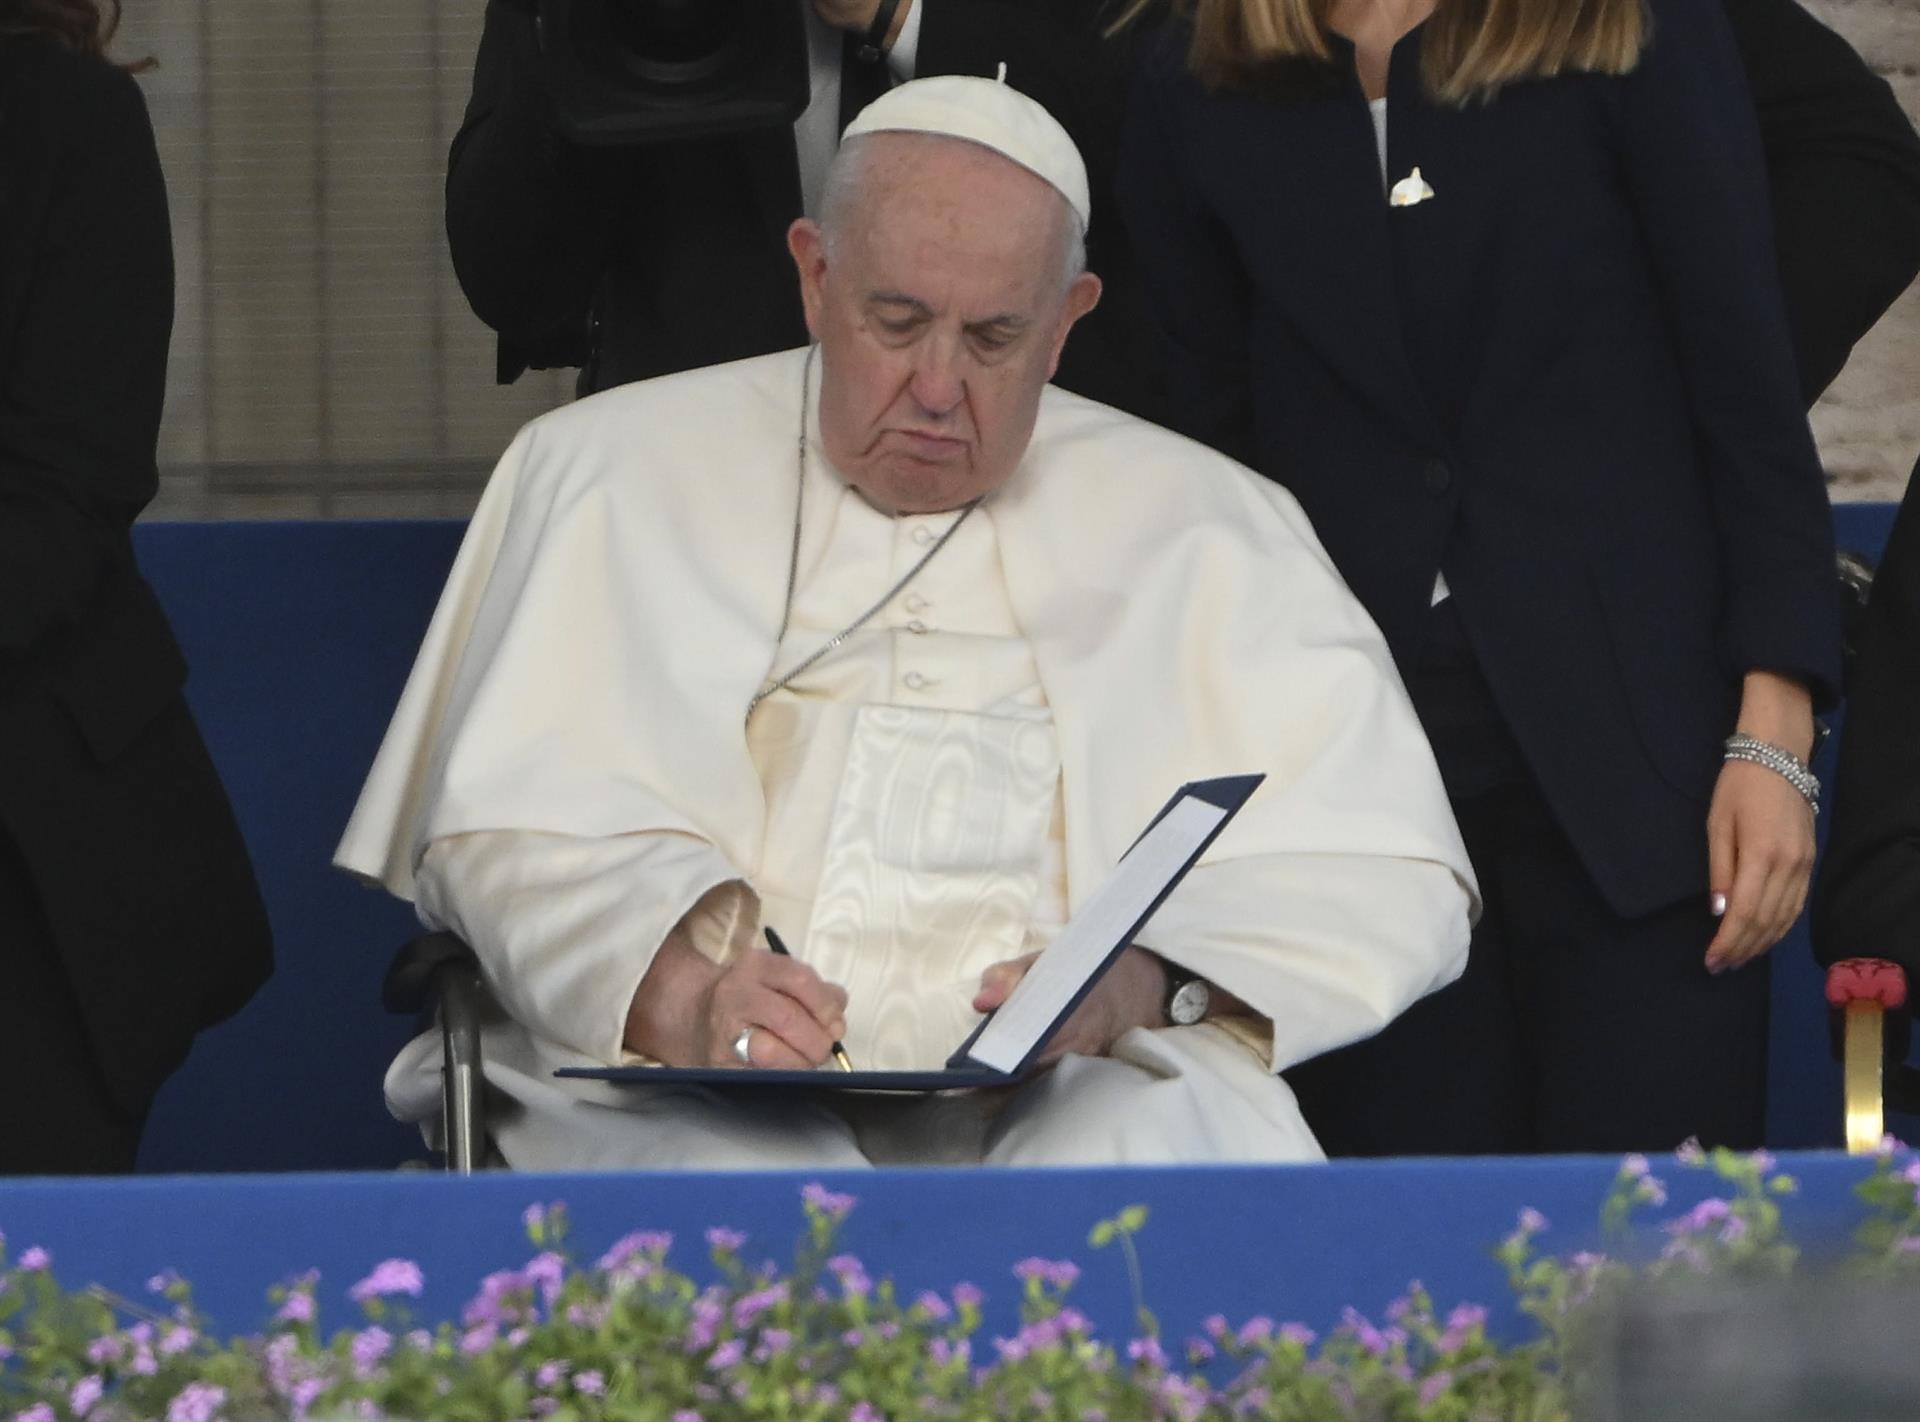 El papa Francisco dice que paz es posible en Ucrania y reitera disponibilidad a mediar